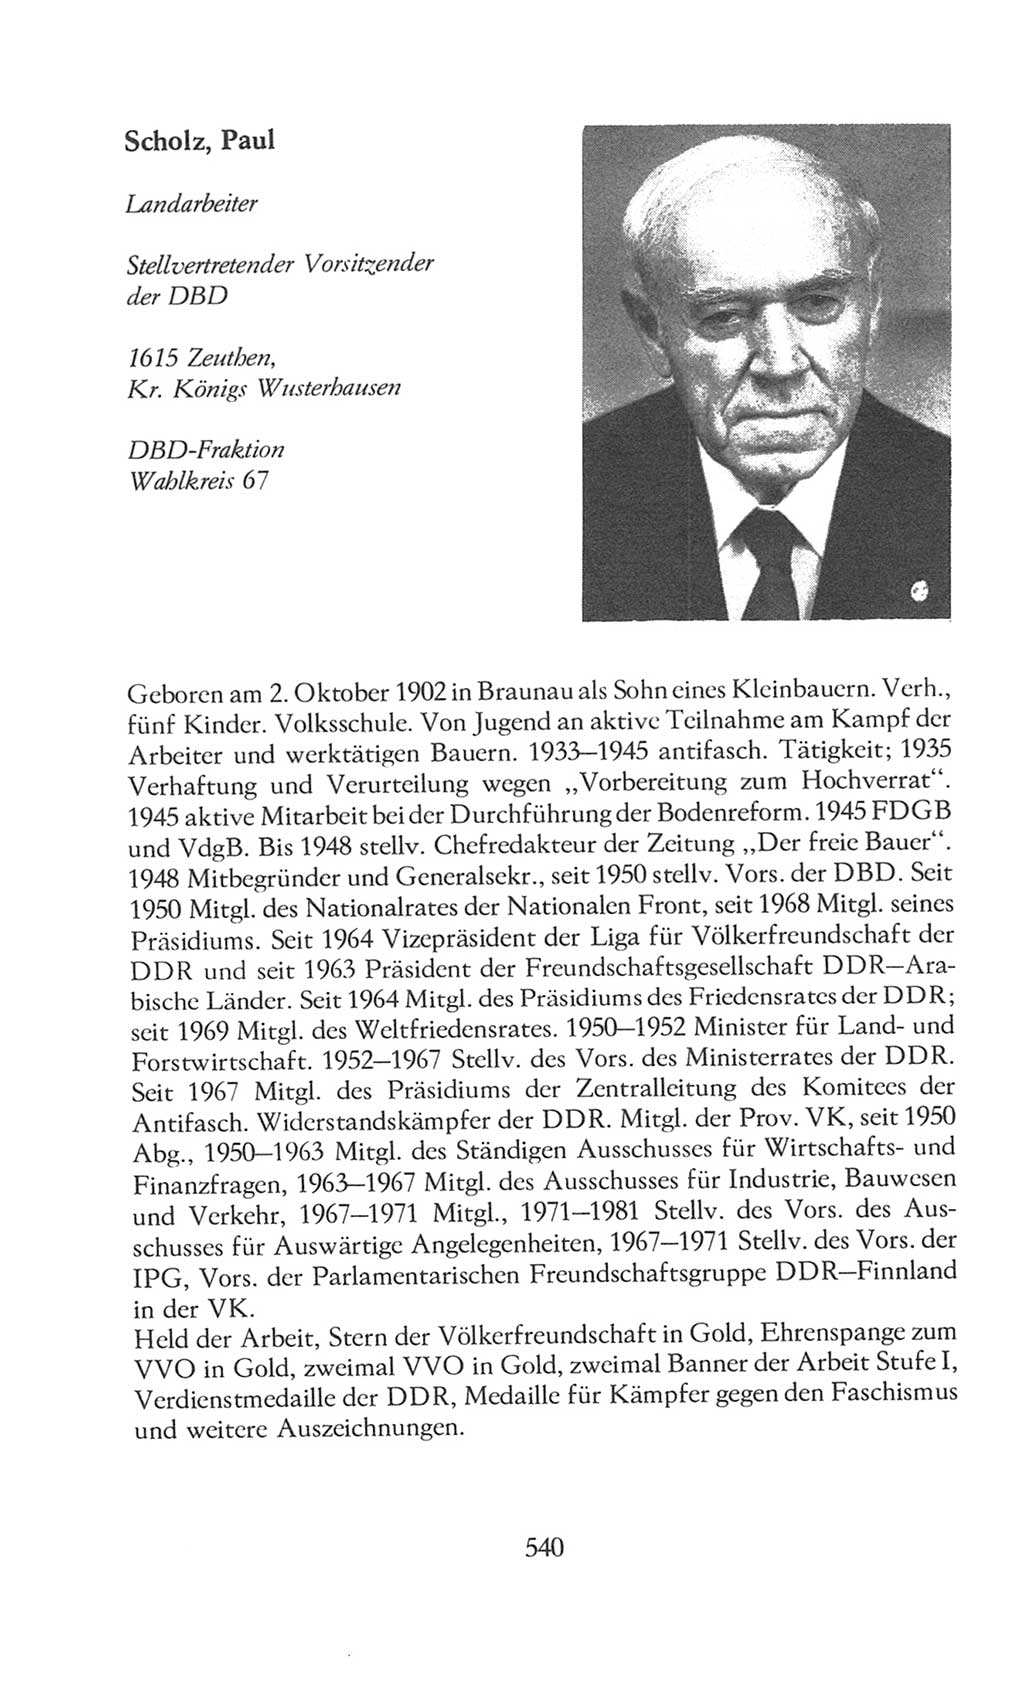 Volkskammer (VK) der Deutschen Demokratischen Republik (DDR), 8. Wahlperiode 1981-1986, Seite 540 (VK. DDR 8. WP. 1981-1986, S. 540)